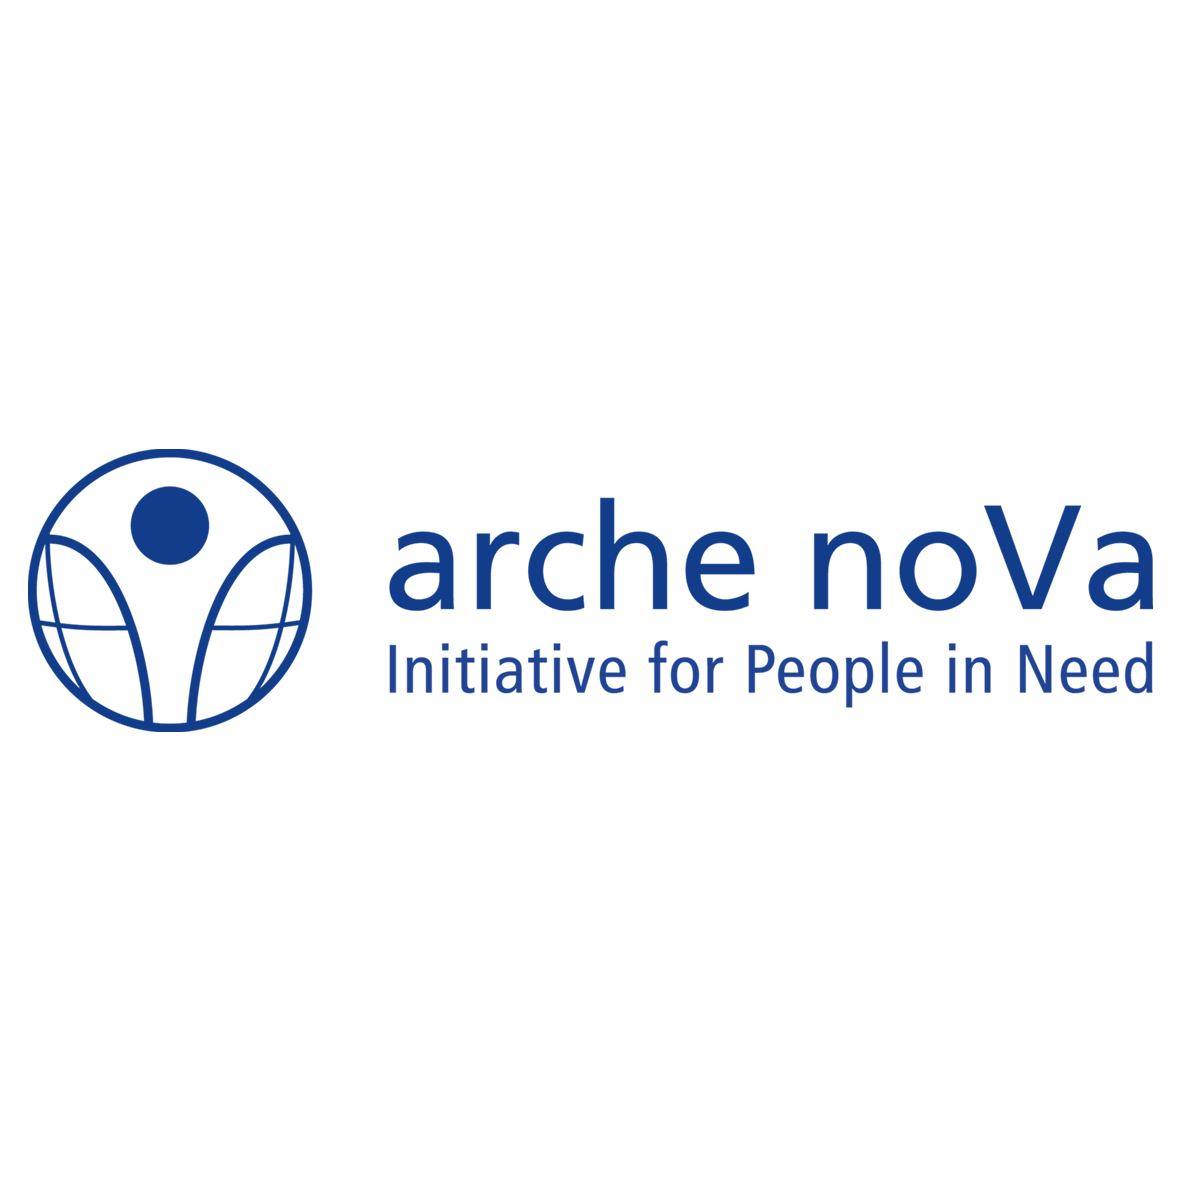 Arche-nova